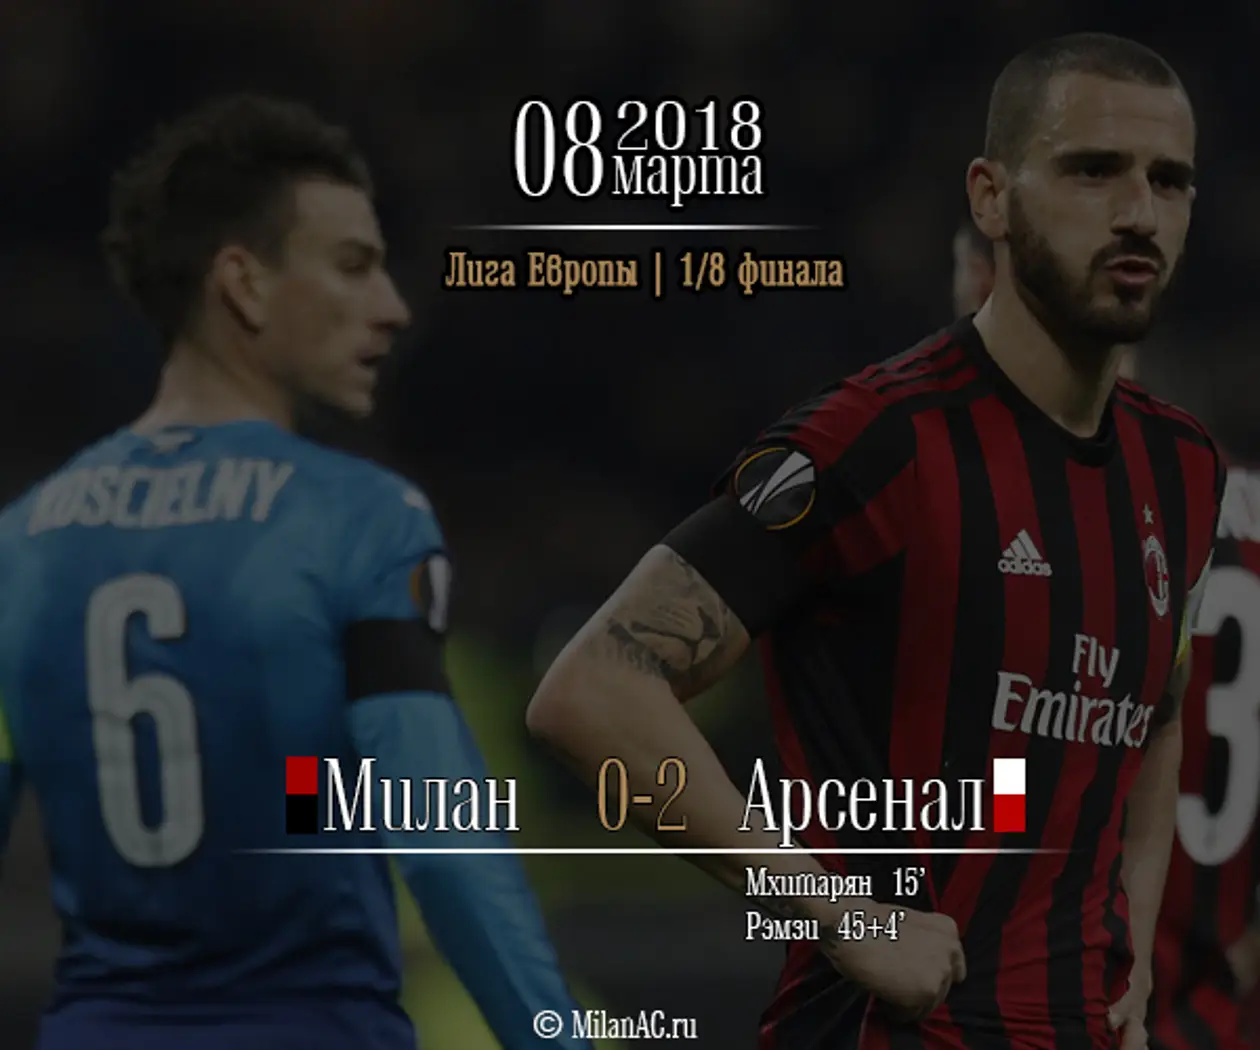 «Милан» — «Арсенал» 0-2 (1/8 финала Лиги Европы, первый матч)